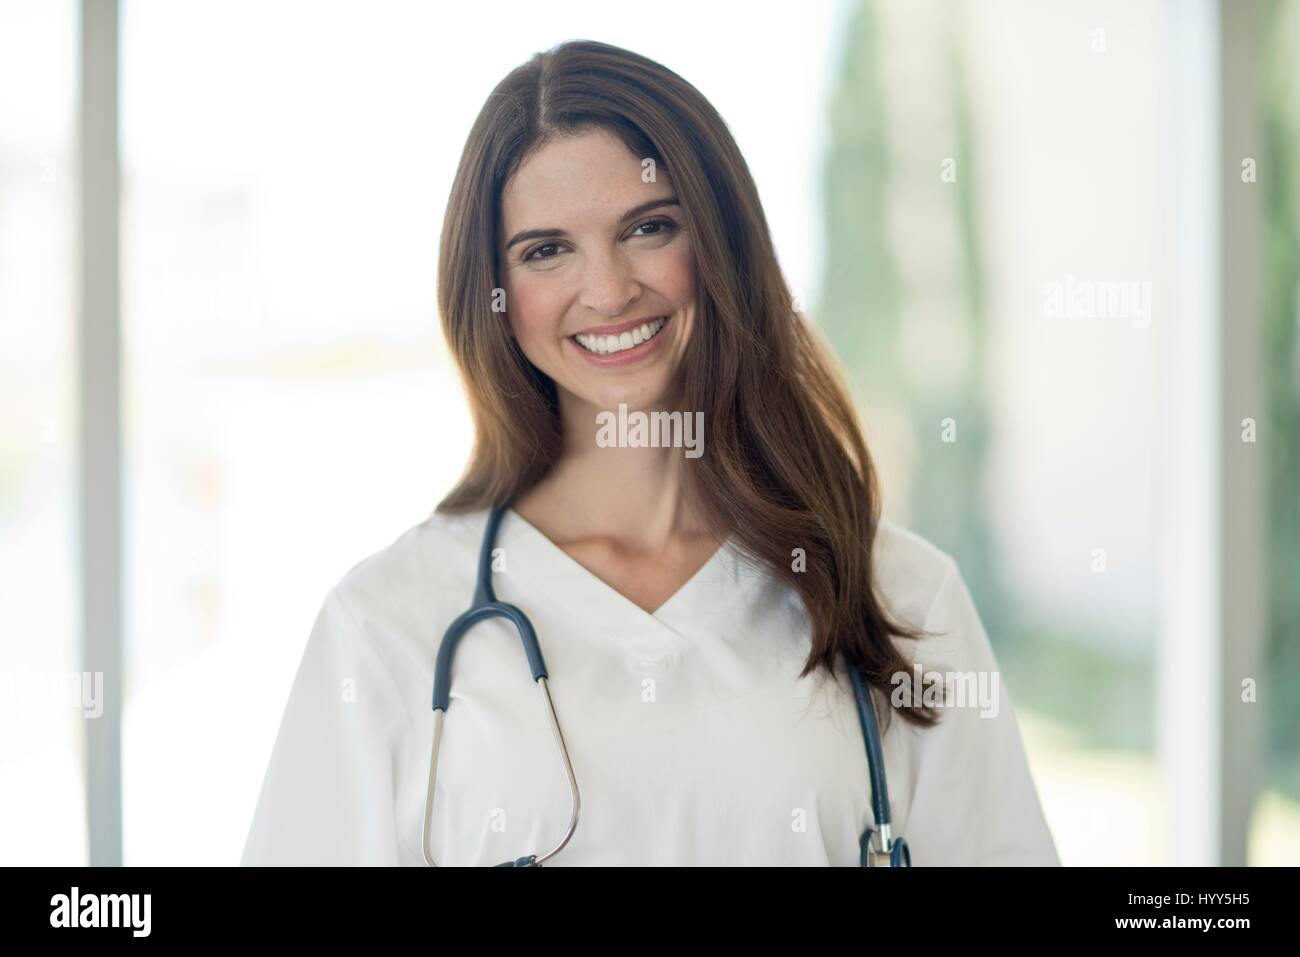 Femme médecin smiling towards camera, portrait. Banque D'Images